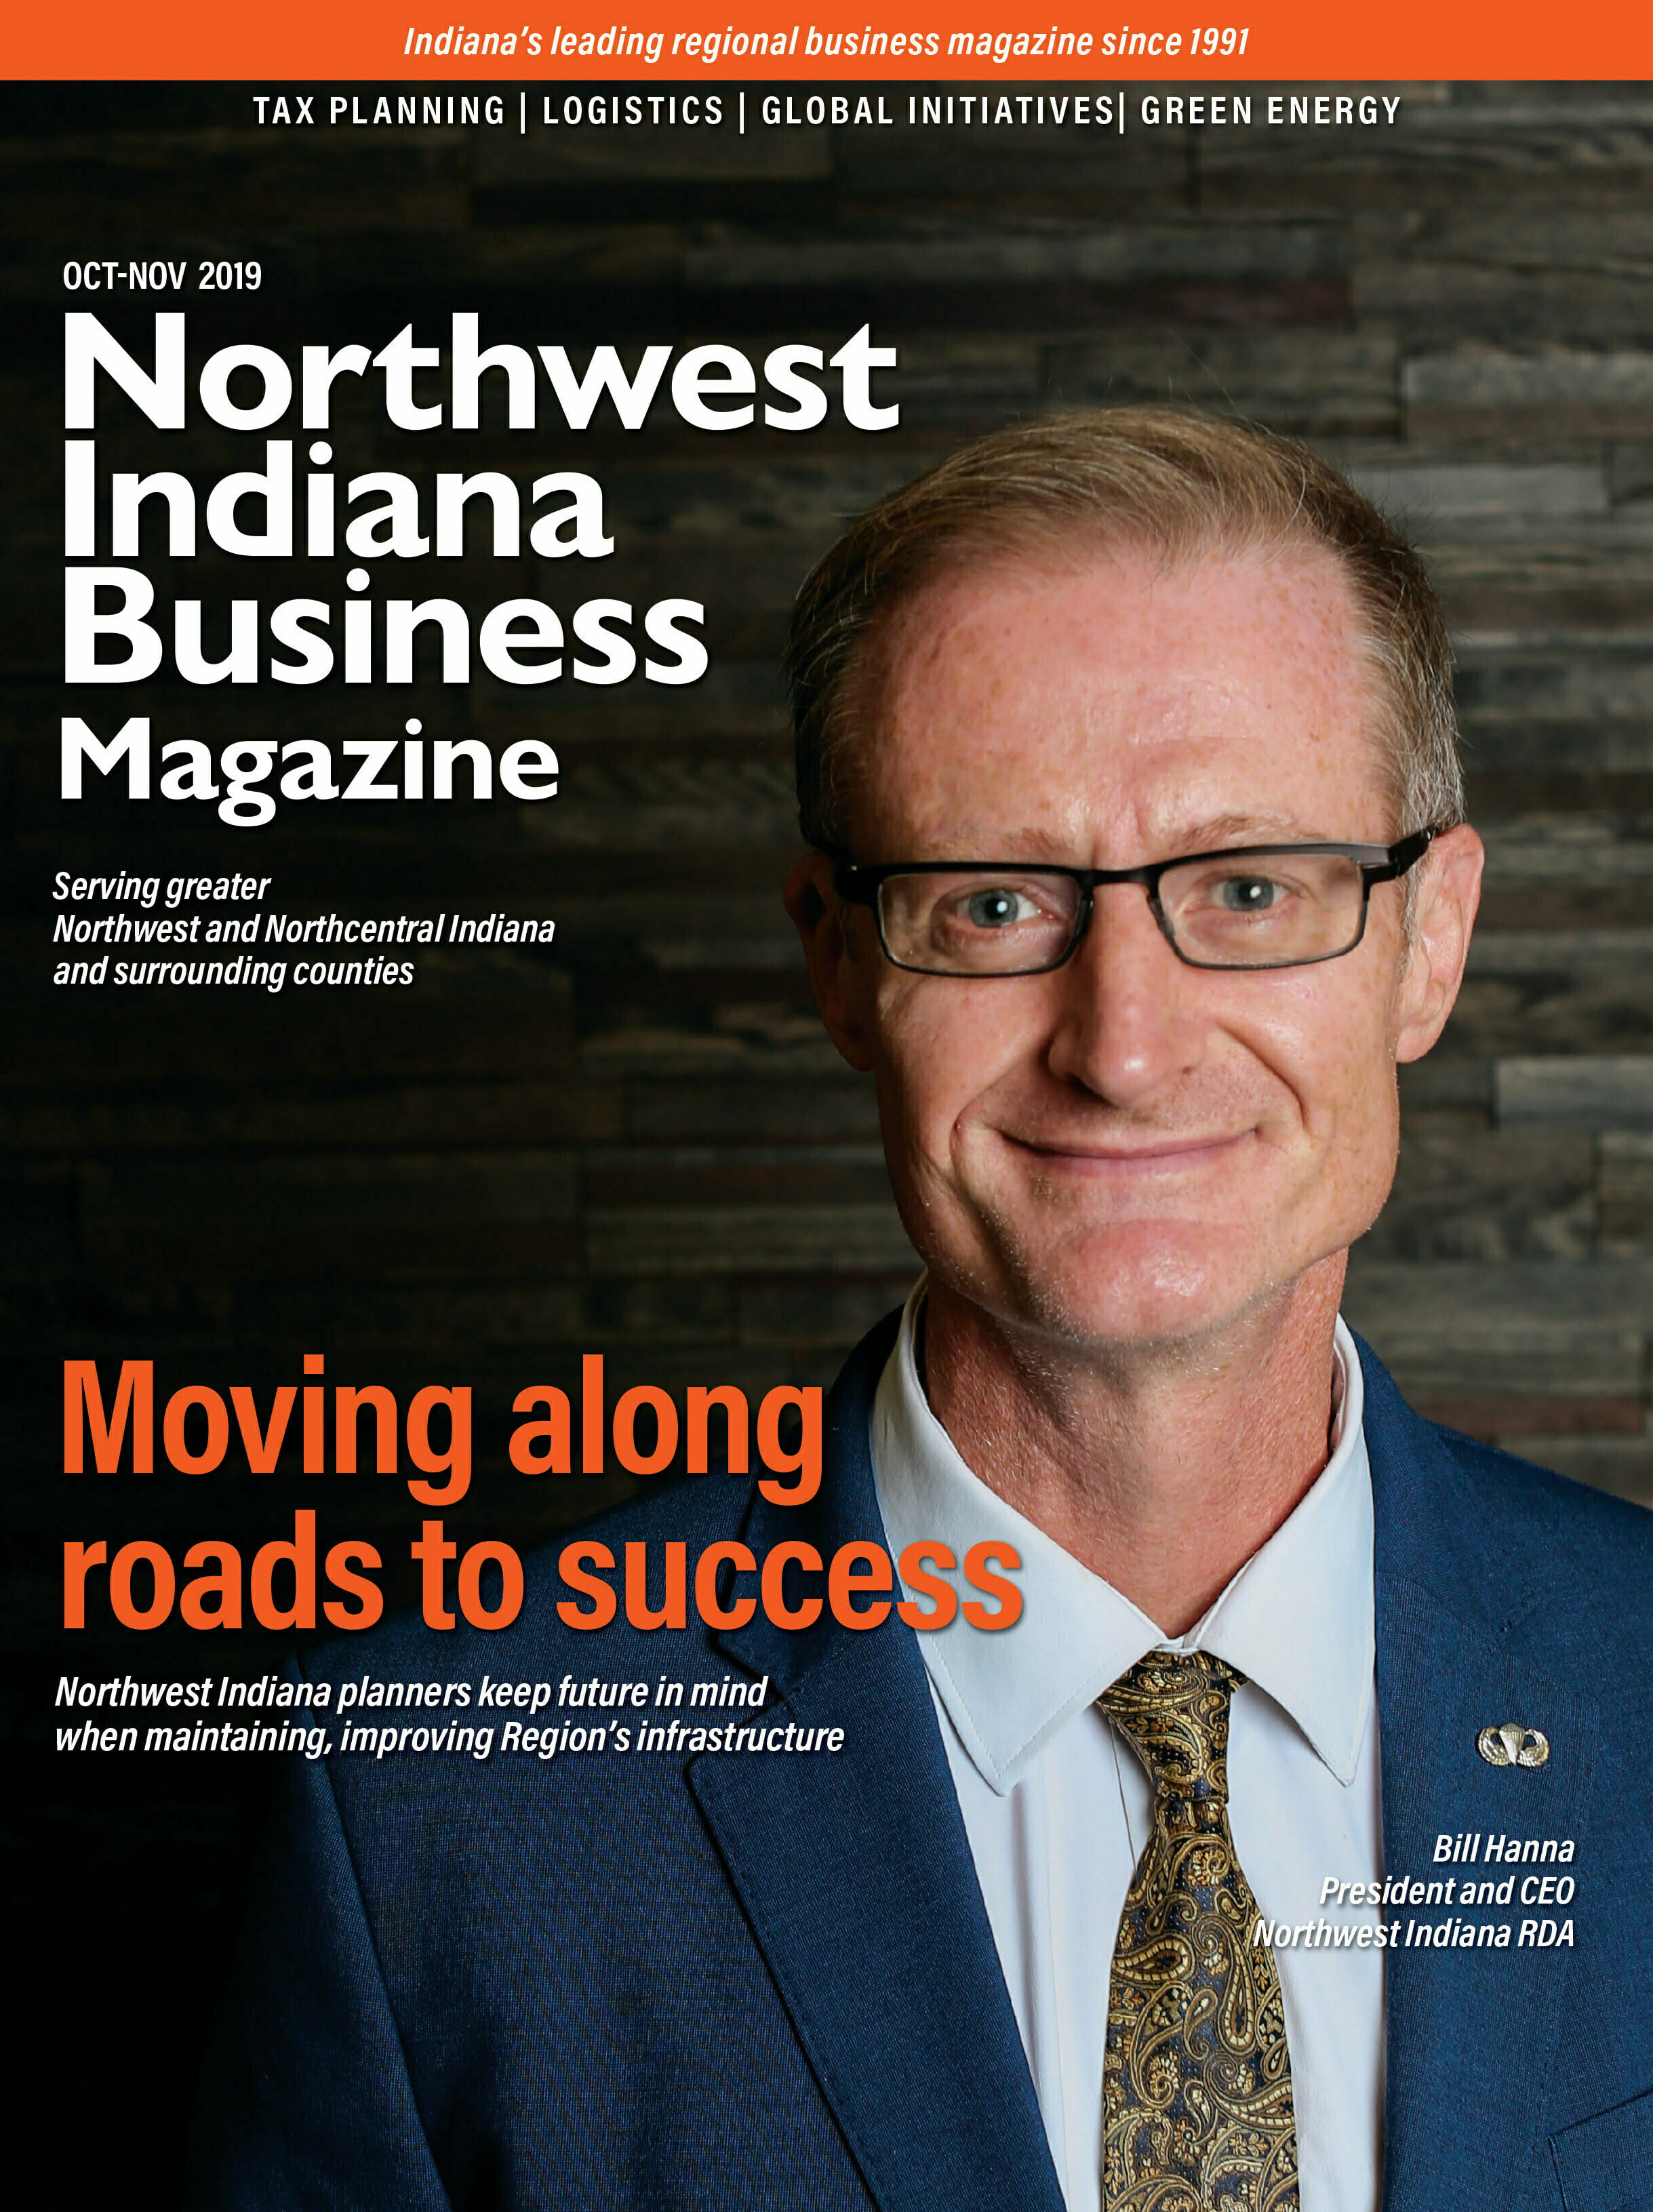 Northwest Indiana Business Magazine Oct-Nov 2019 issue